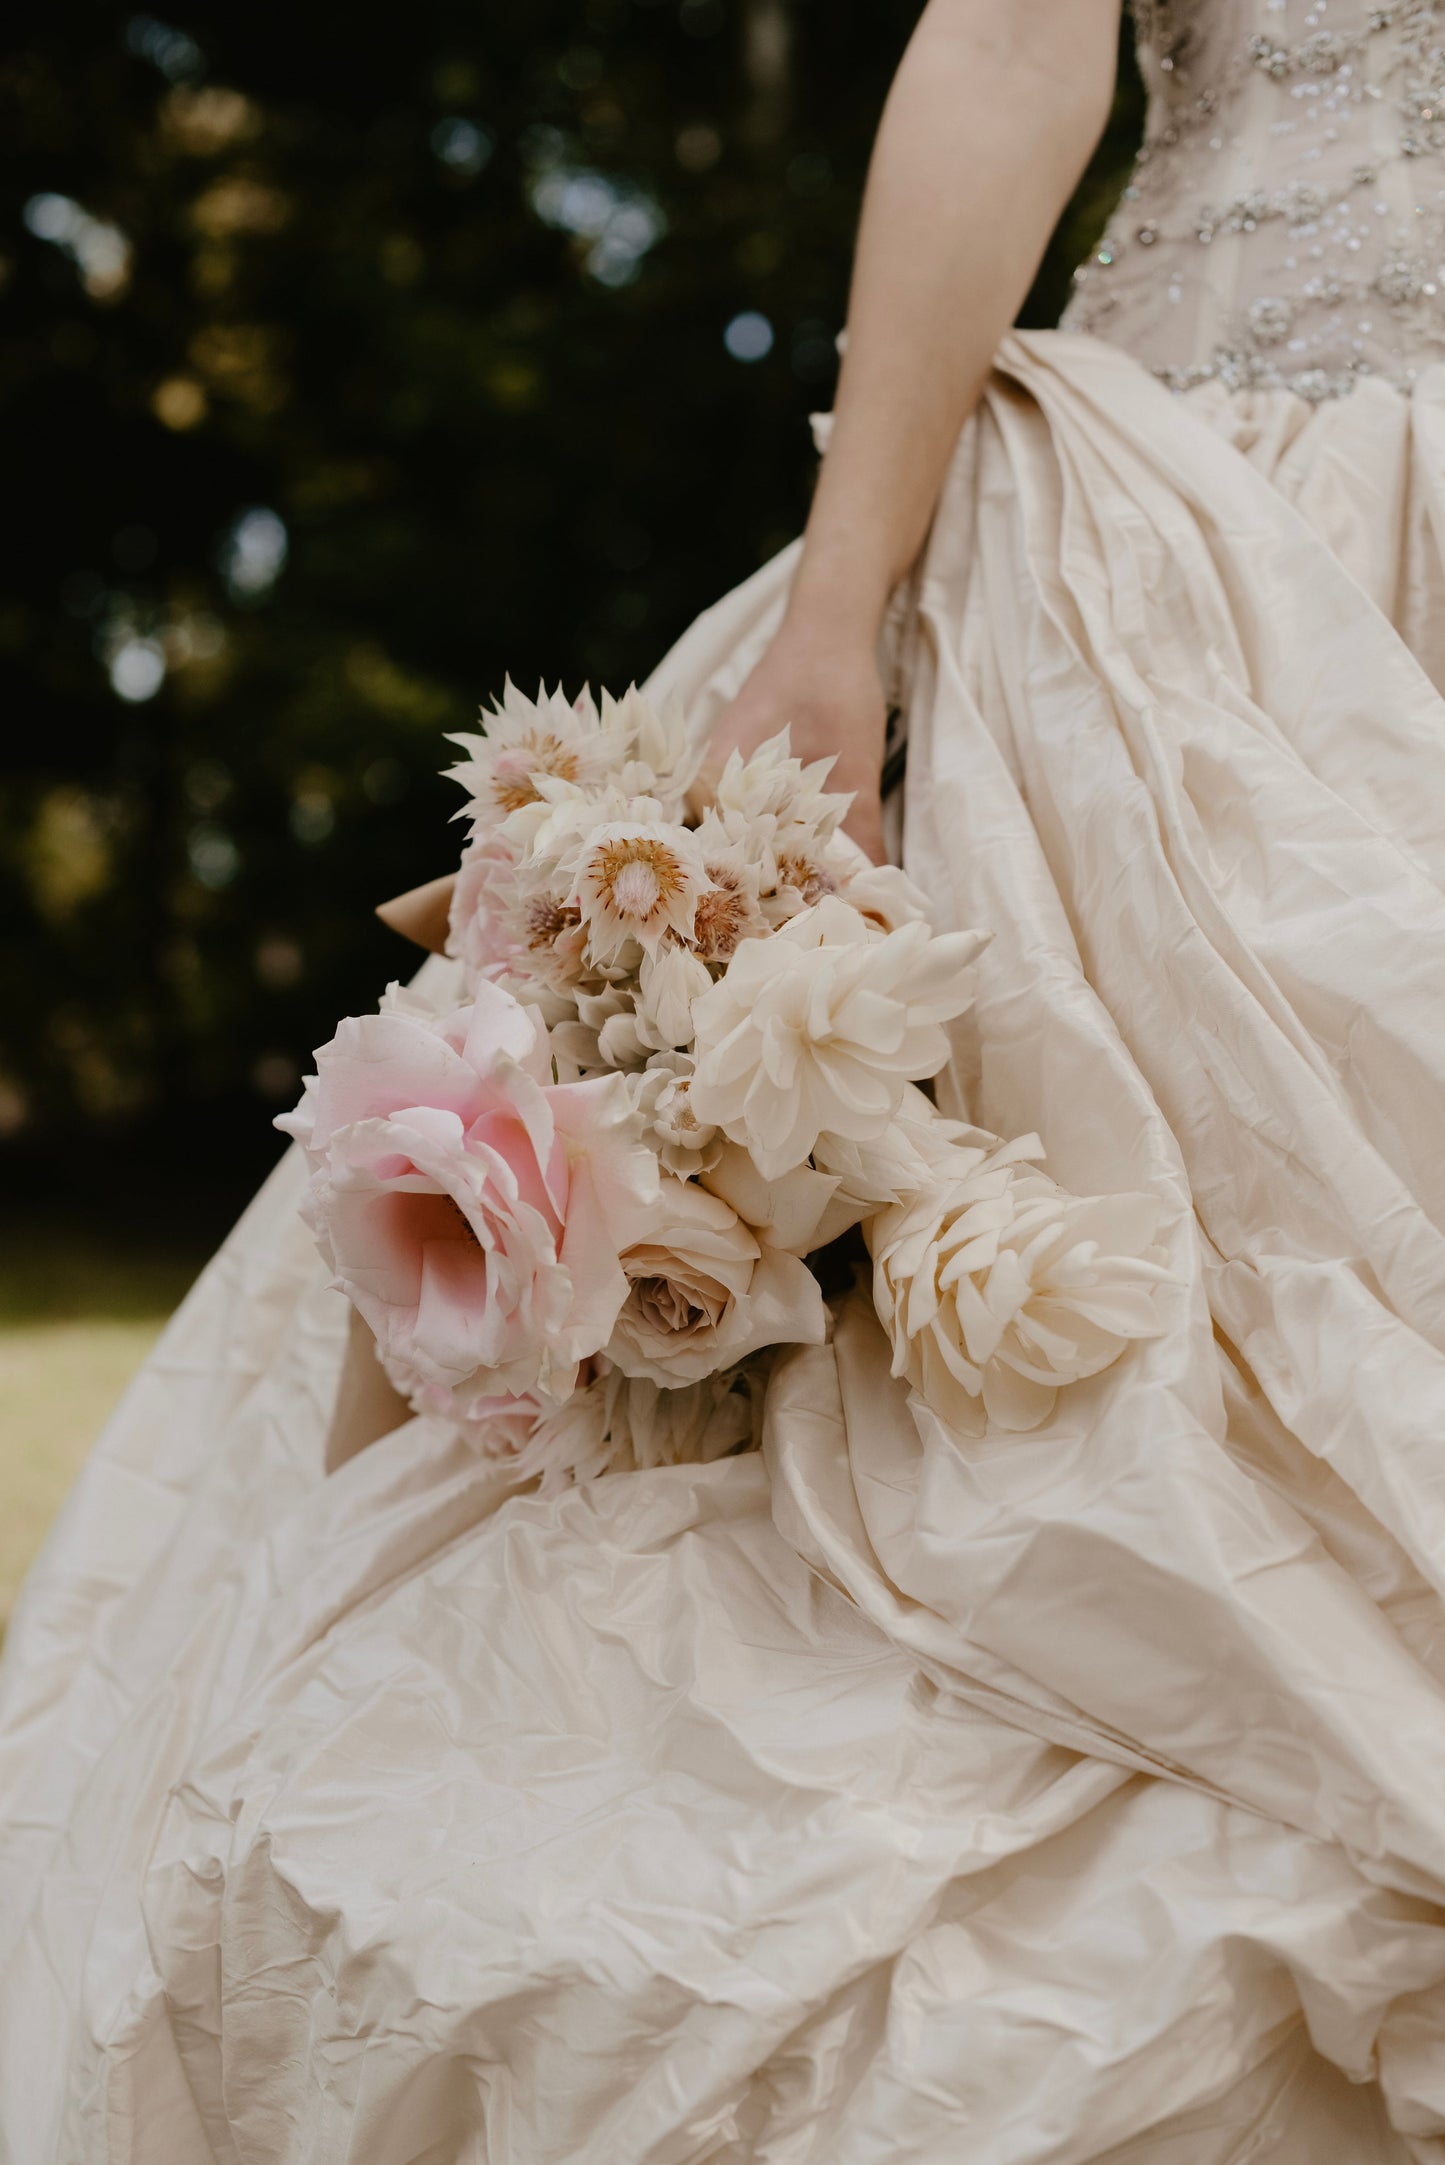 Význam květin a kytic na svatbách: Zvýraznění vzhledu nevěsty a vyjádření emocí